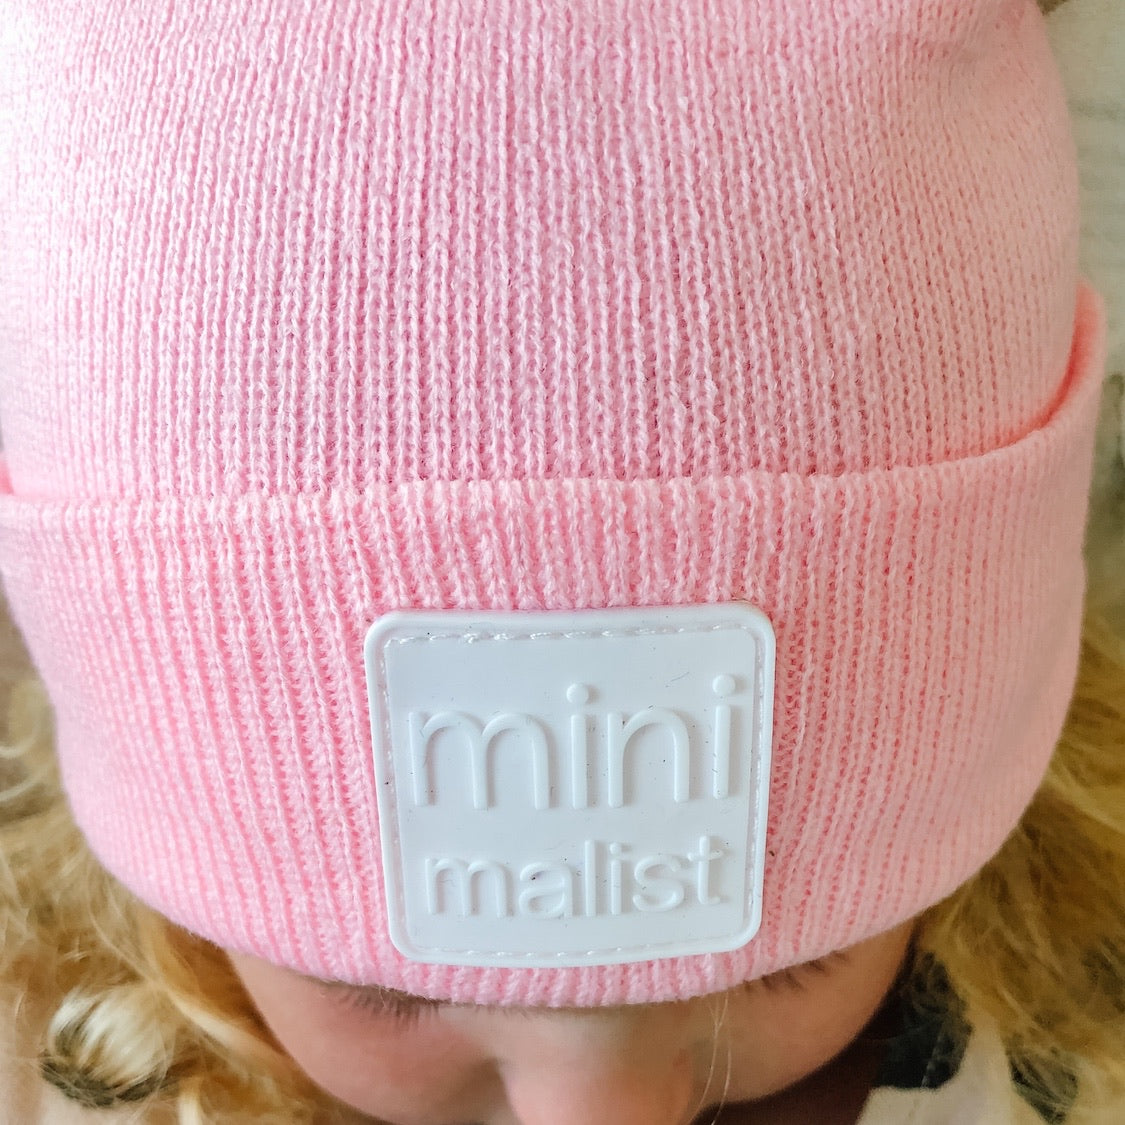 “minimalist” hat / big kid